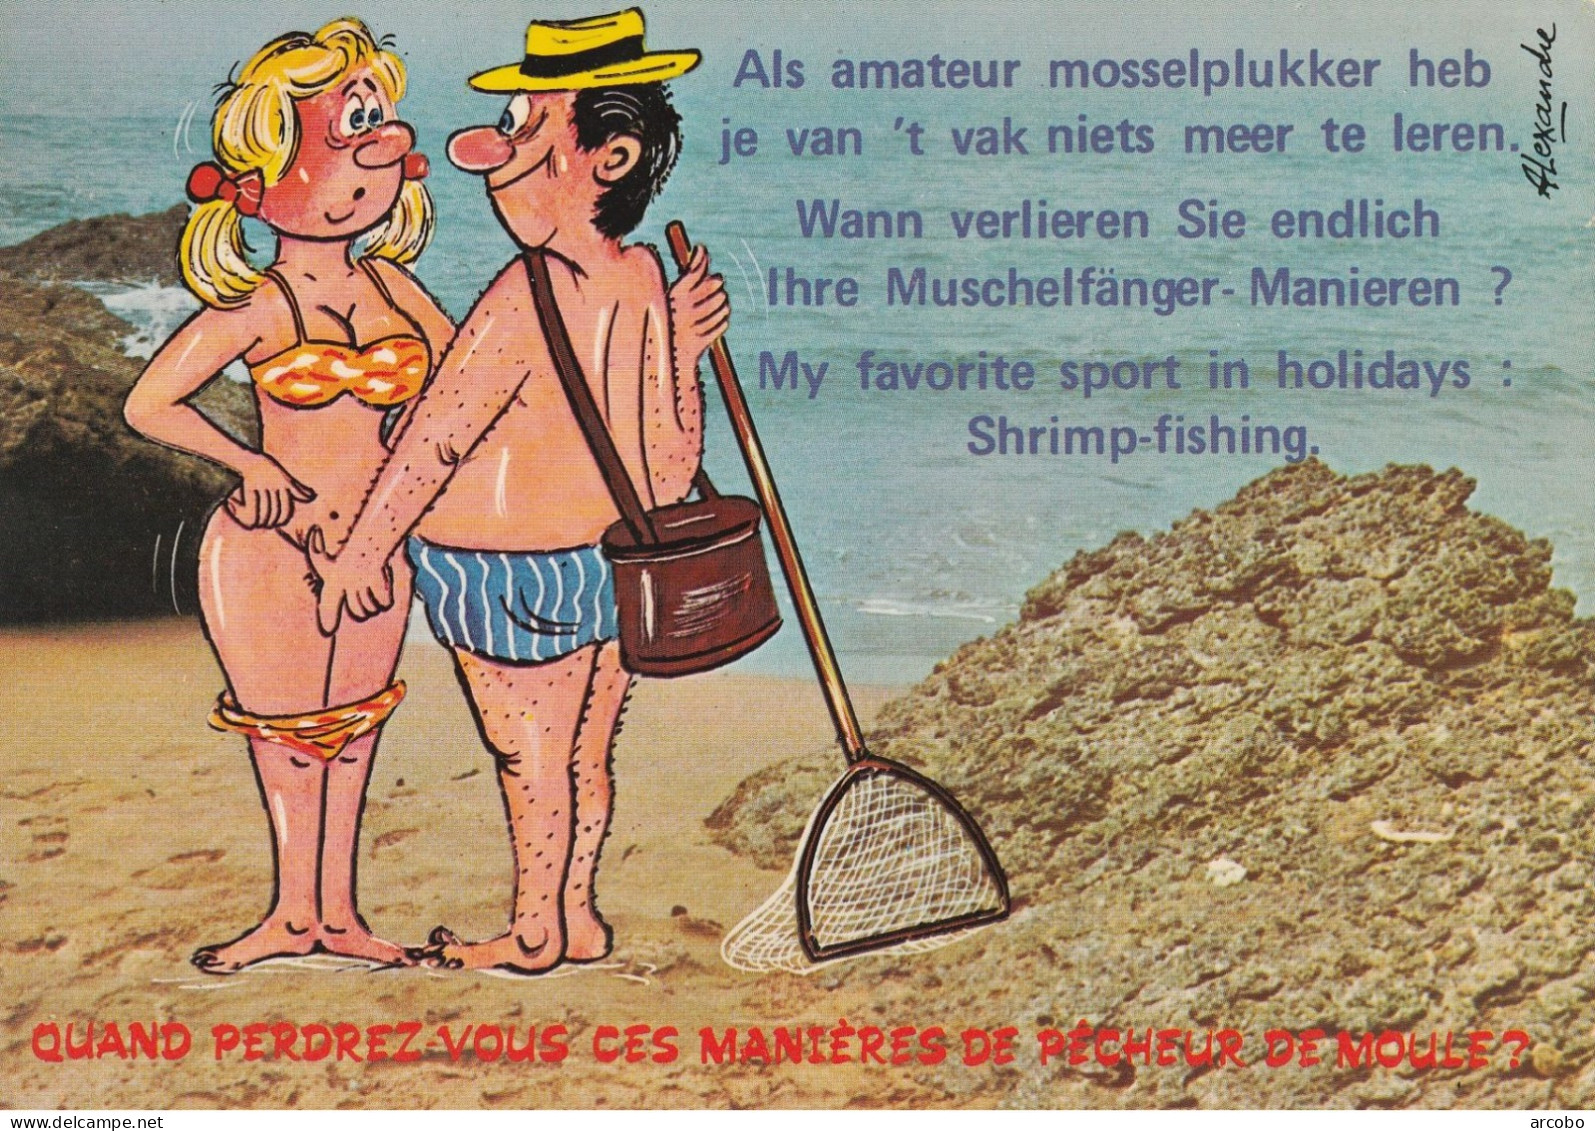 Mosselplukker, Muschelfänger, Shrimp-fishing - Humor